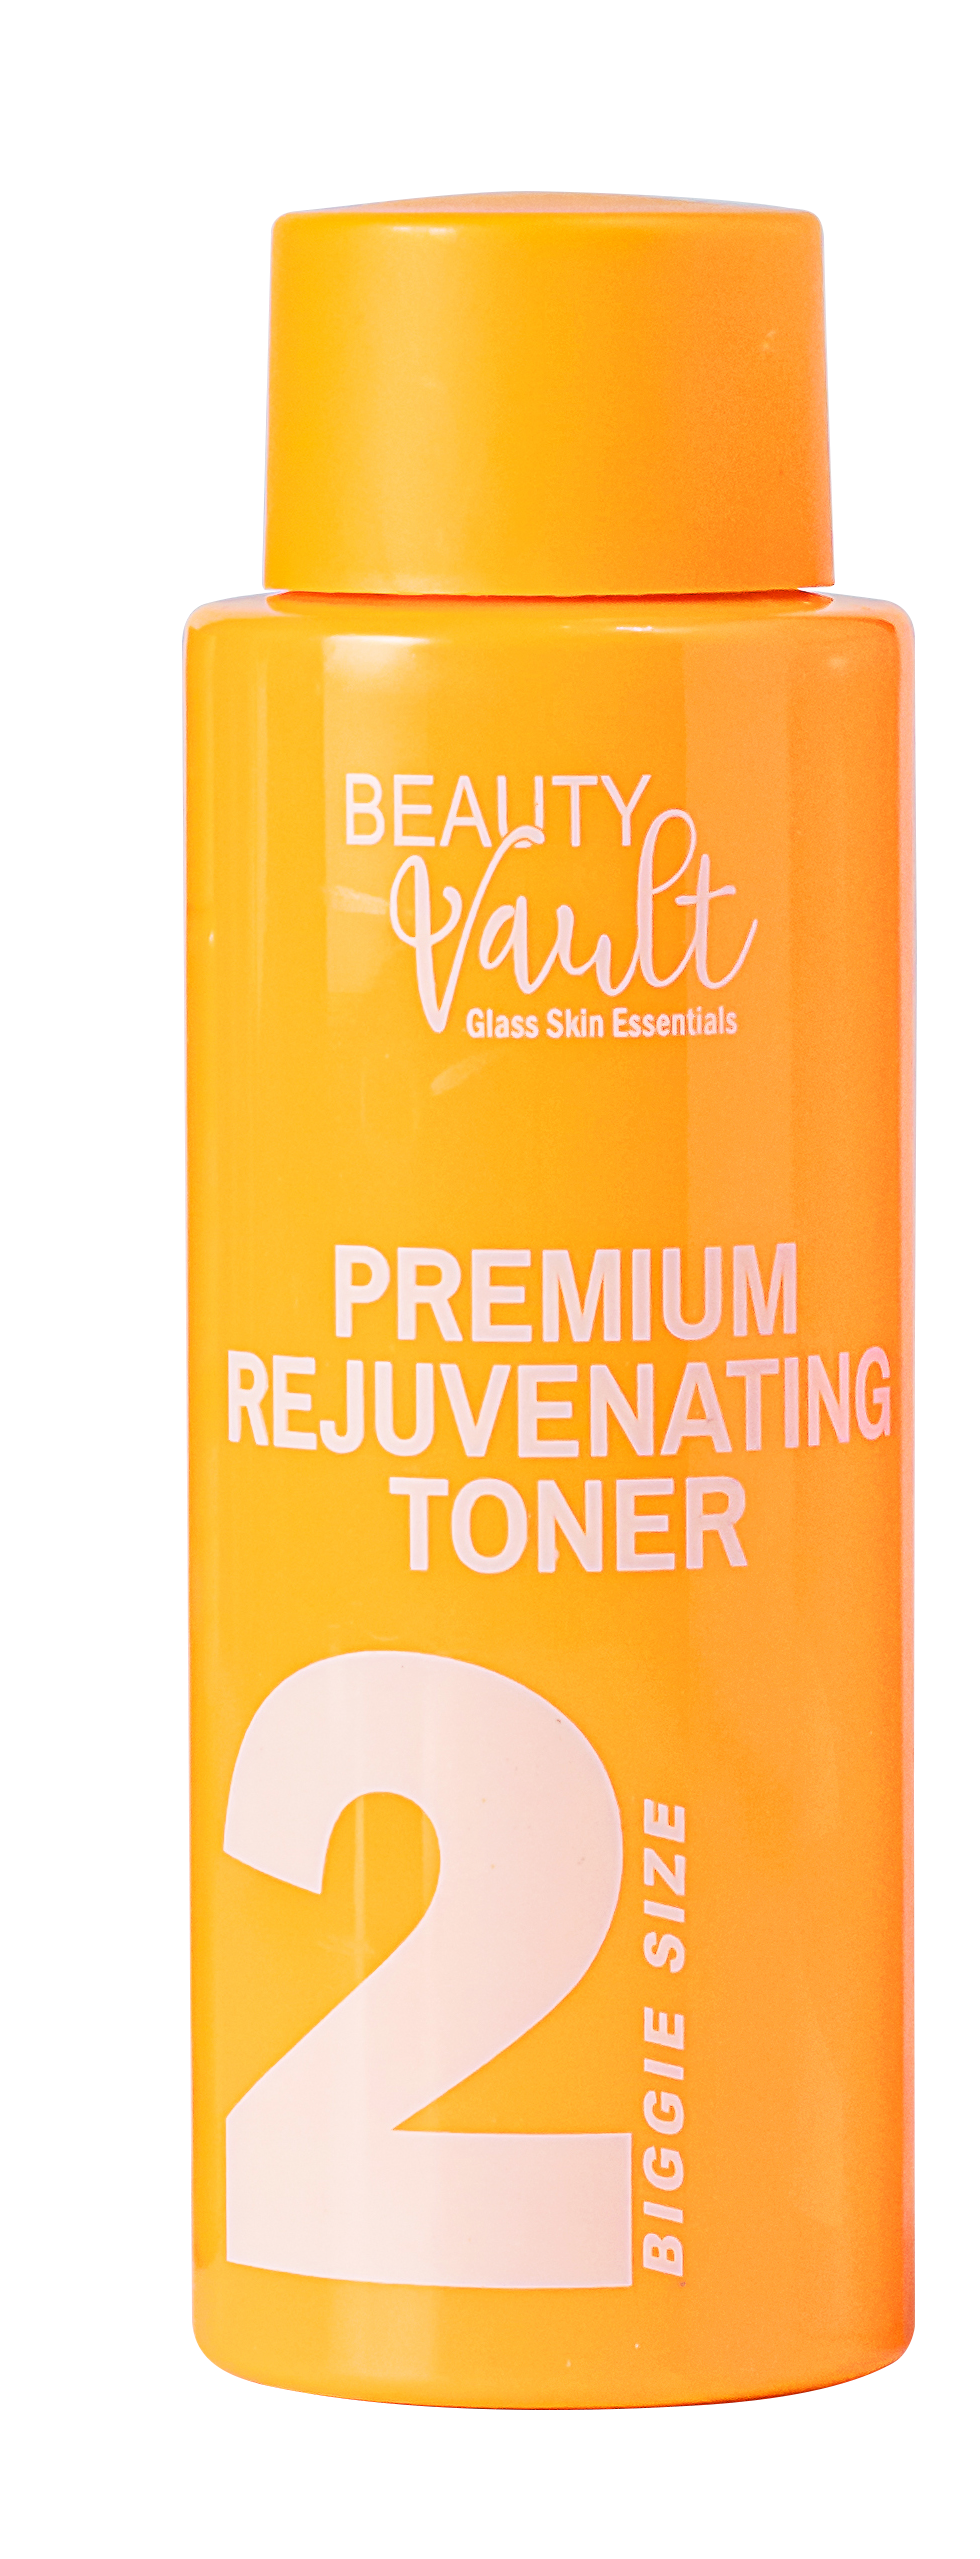 Beauty Vault Premium Rejuvenating Toner in 120ml